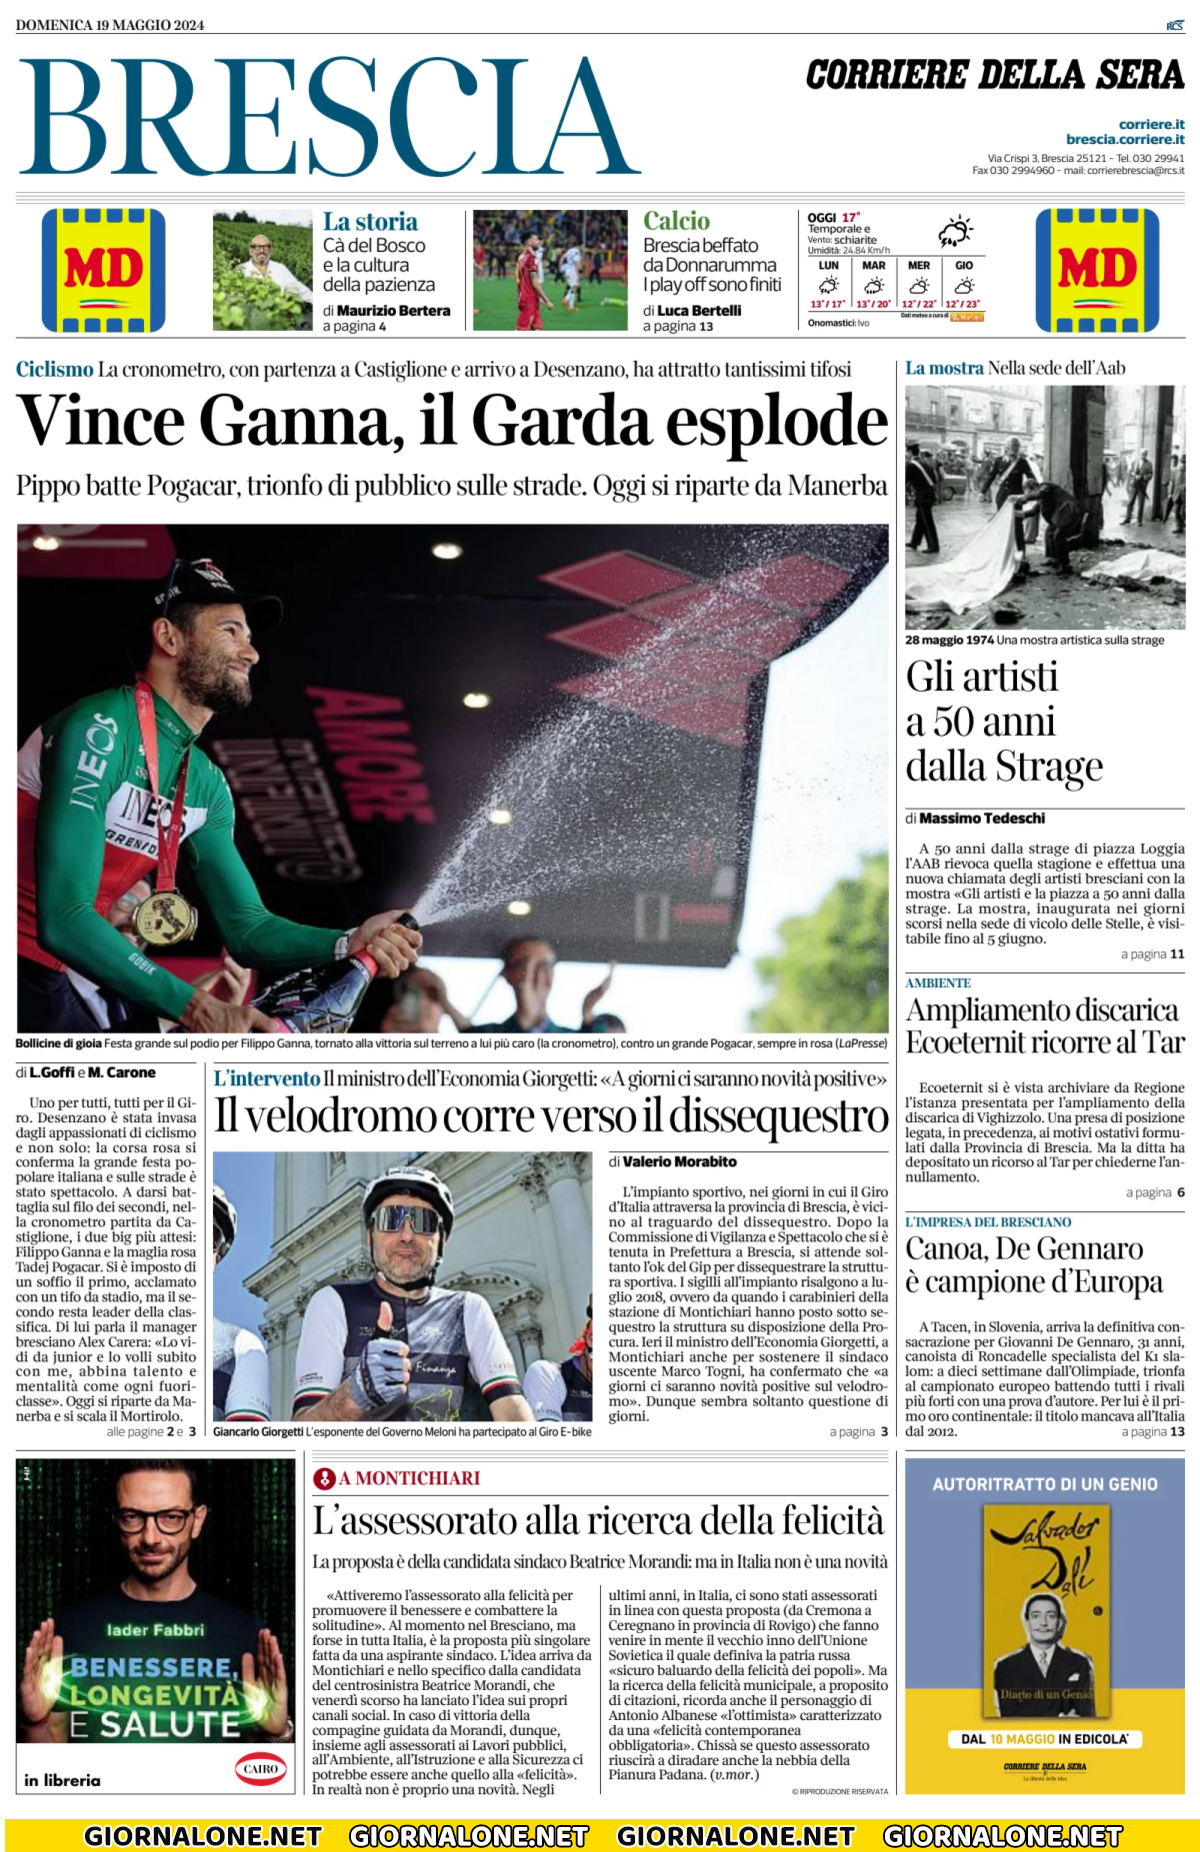 Prima pagina di Corriere della Sera (Brescia)